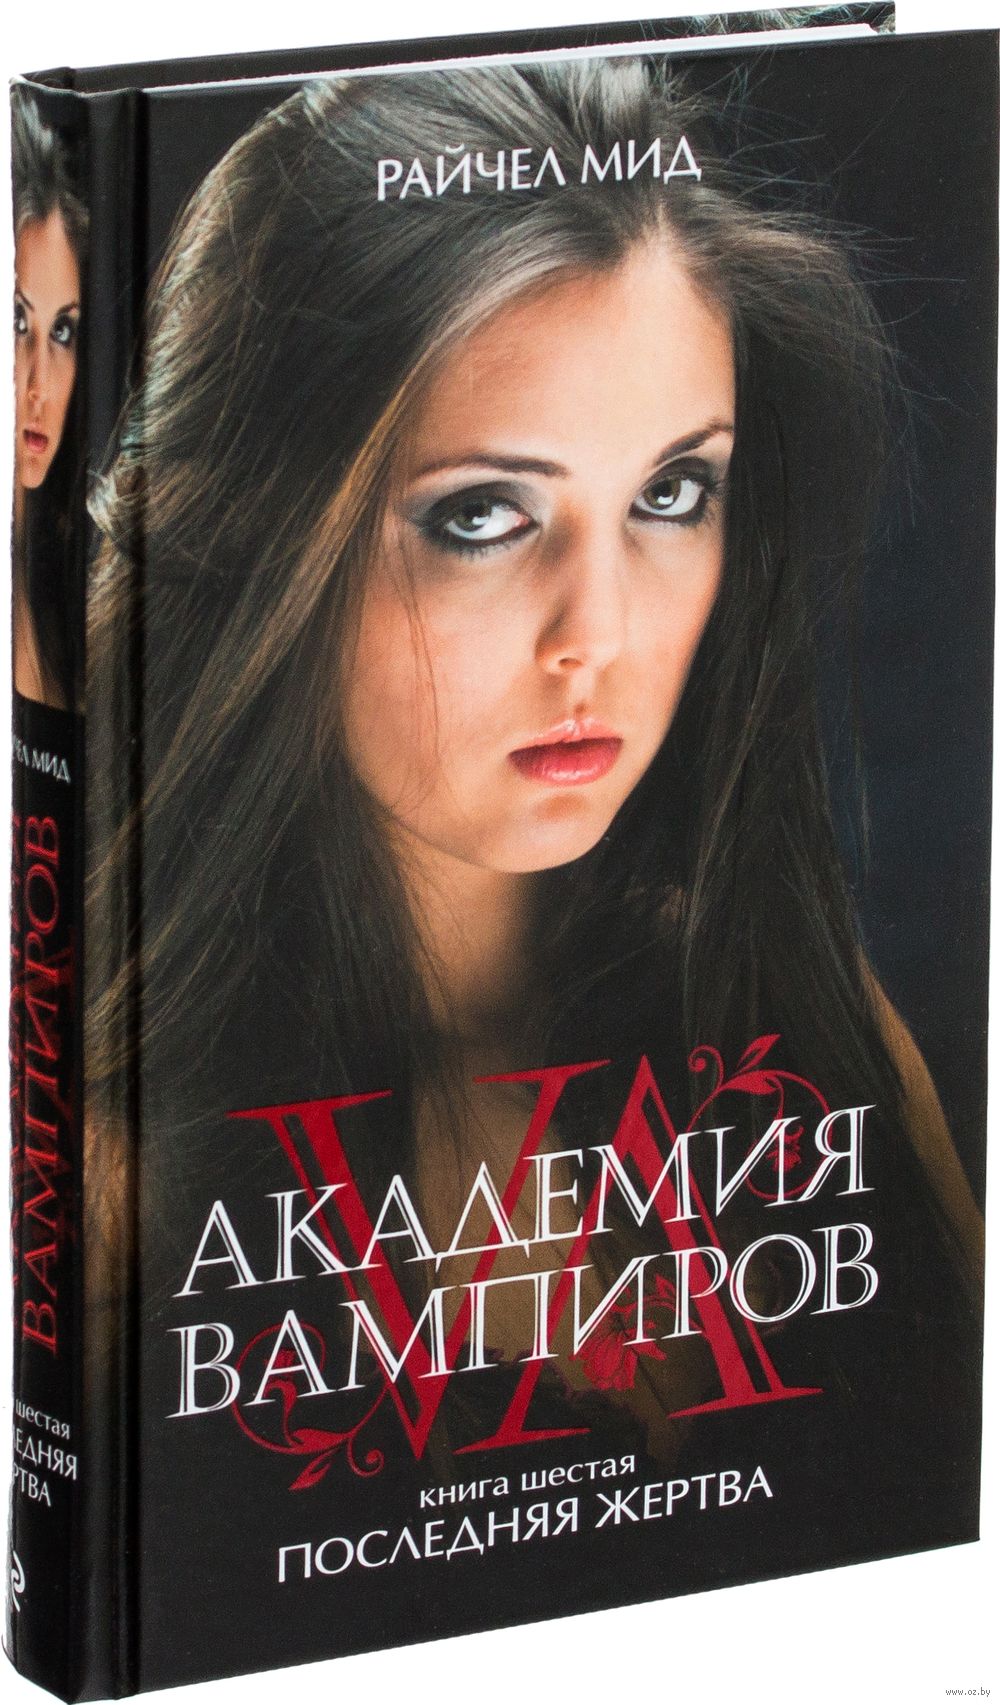 Книга академия вампиров 4 книга скачать